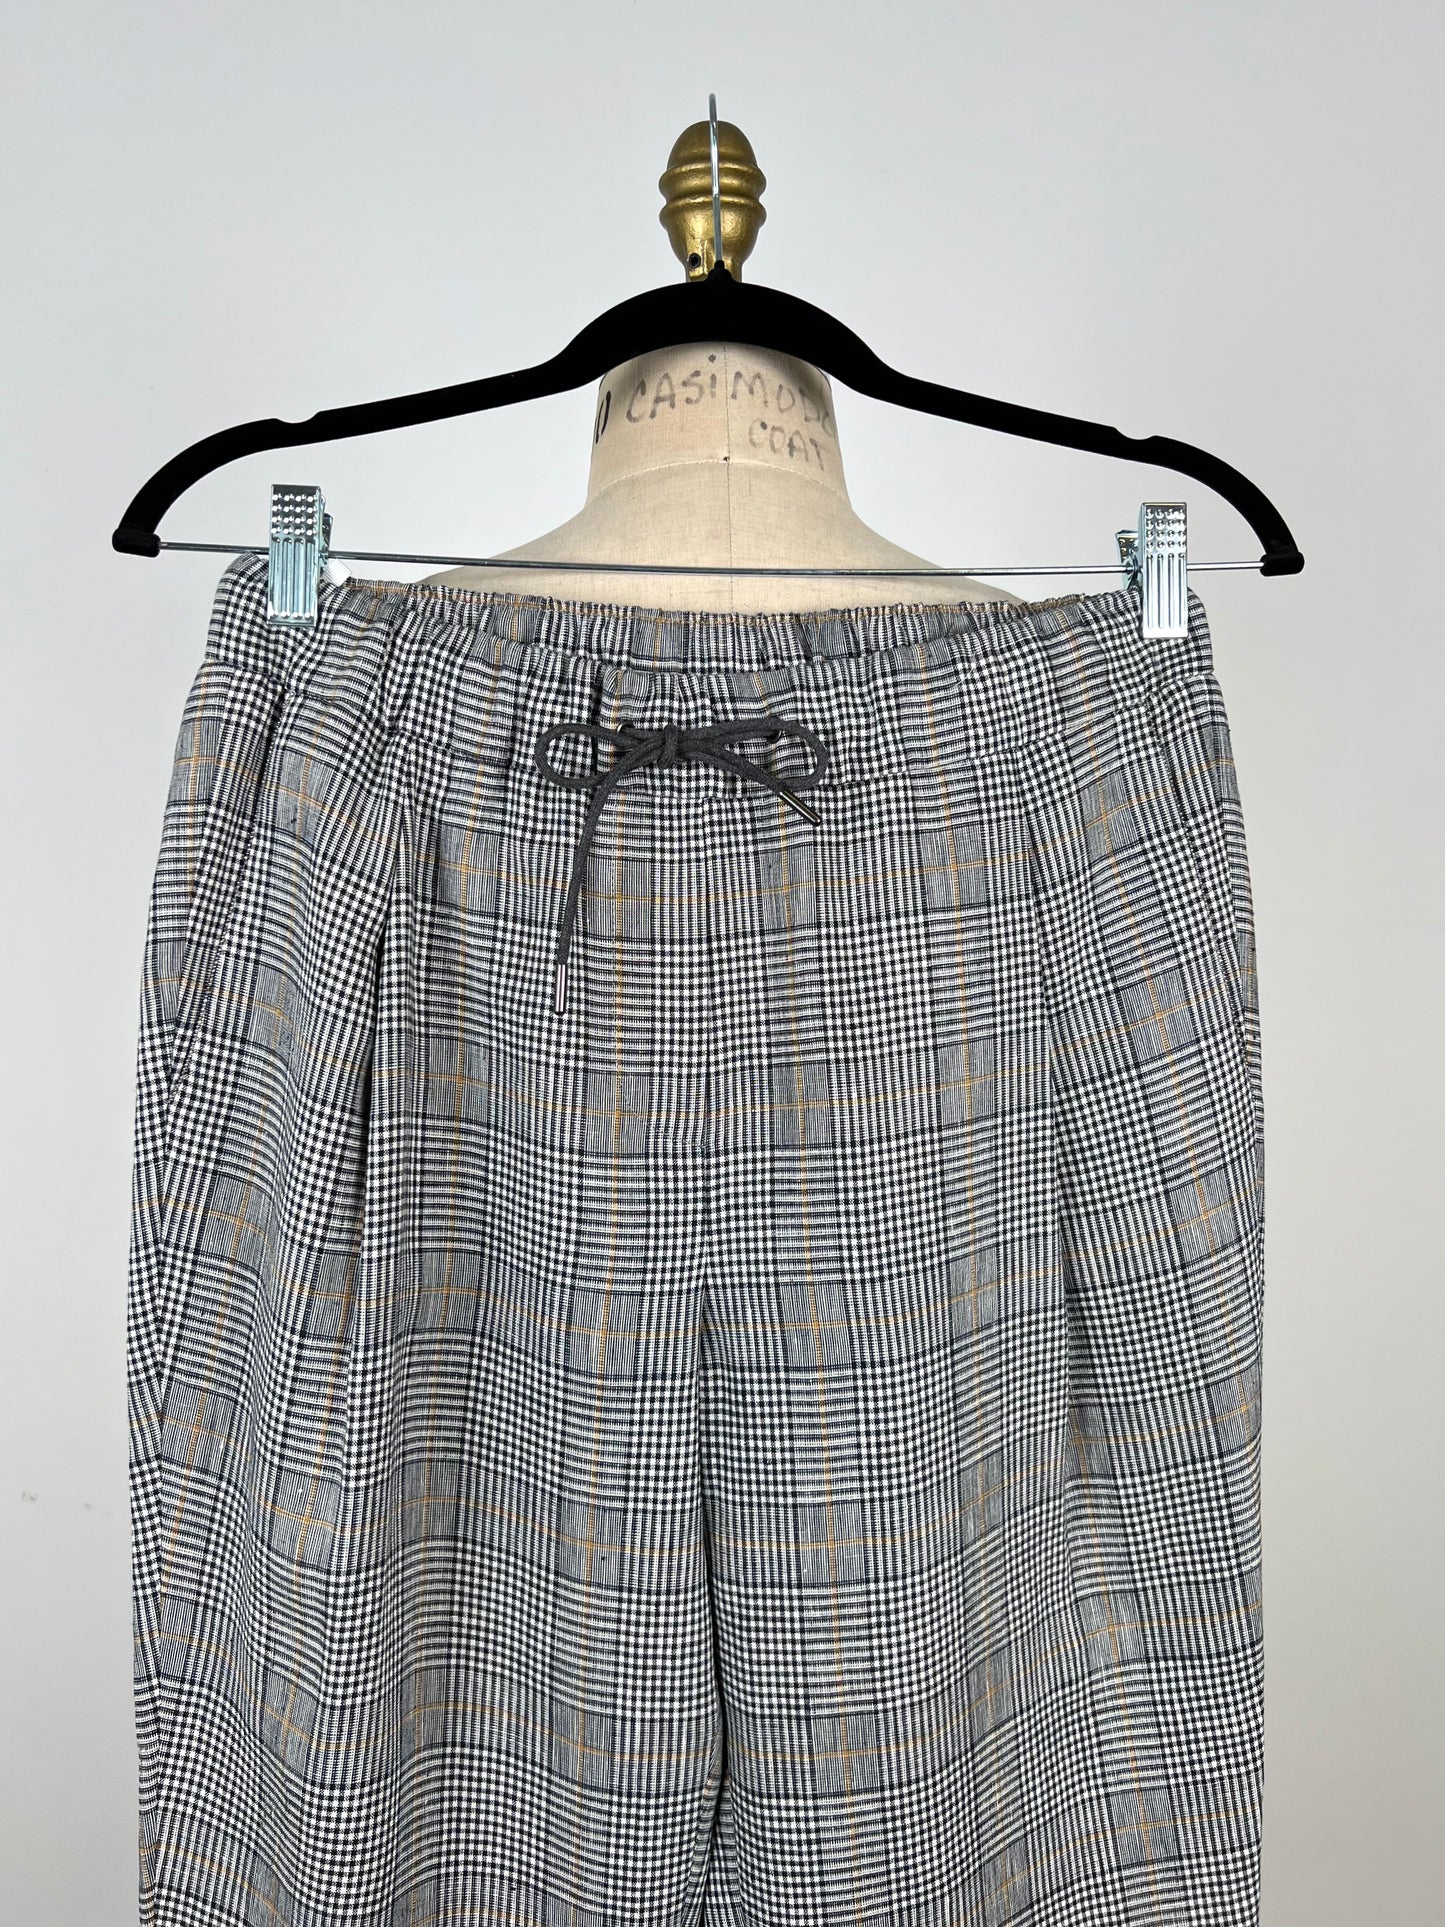 Pantalon tartan à taille élastique (XS)